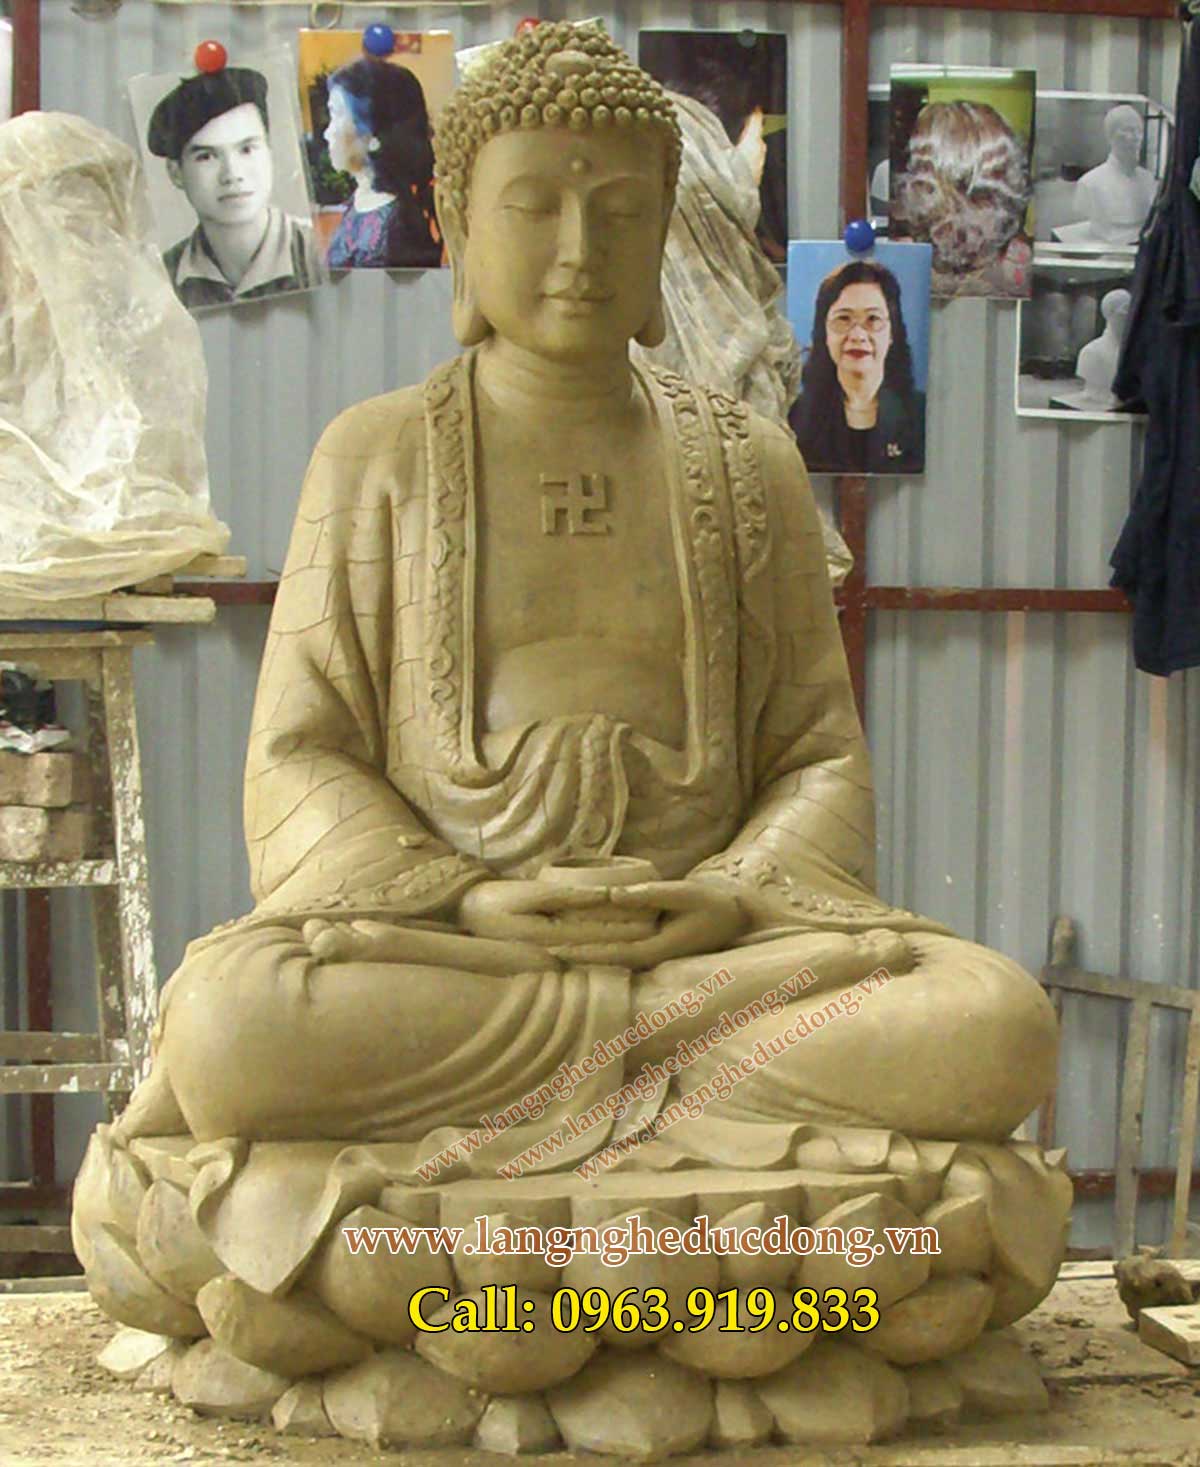 langngheducdong.vn - Tượng Phật Đúc Đồng, cao 89cm